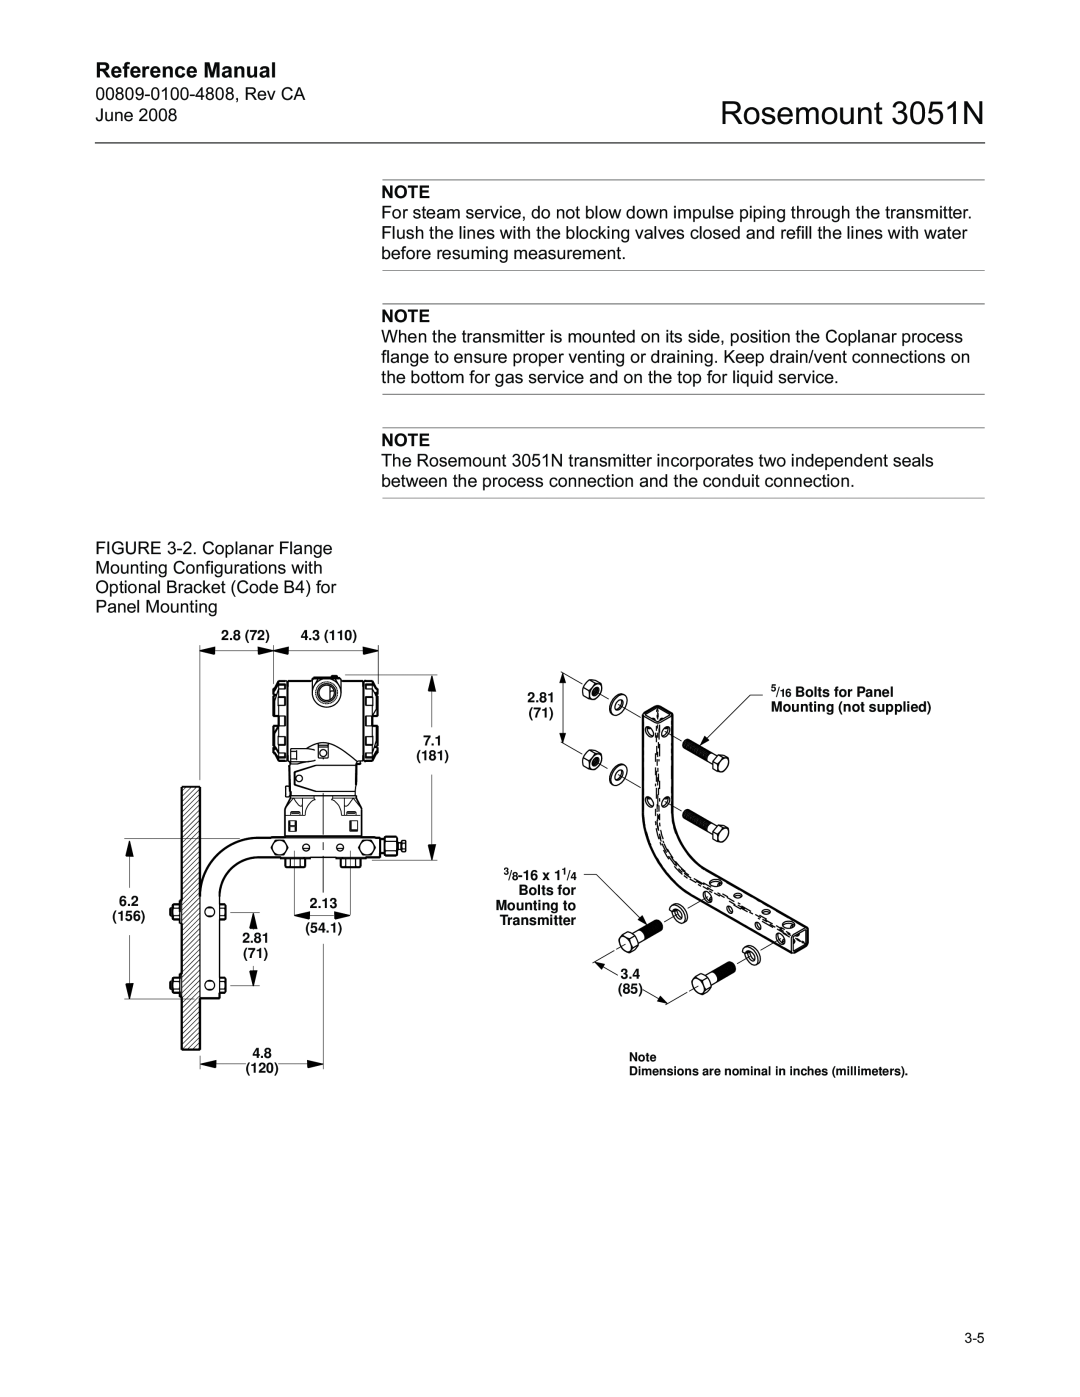 Emerson manual Rosemount 3051N, Reference Manual, 00809-0100-4808,Rev CA June 